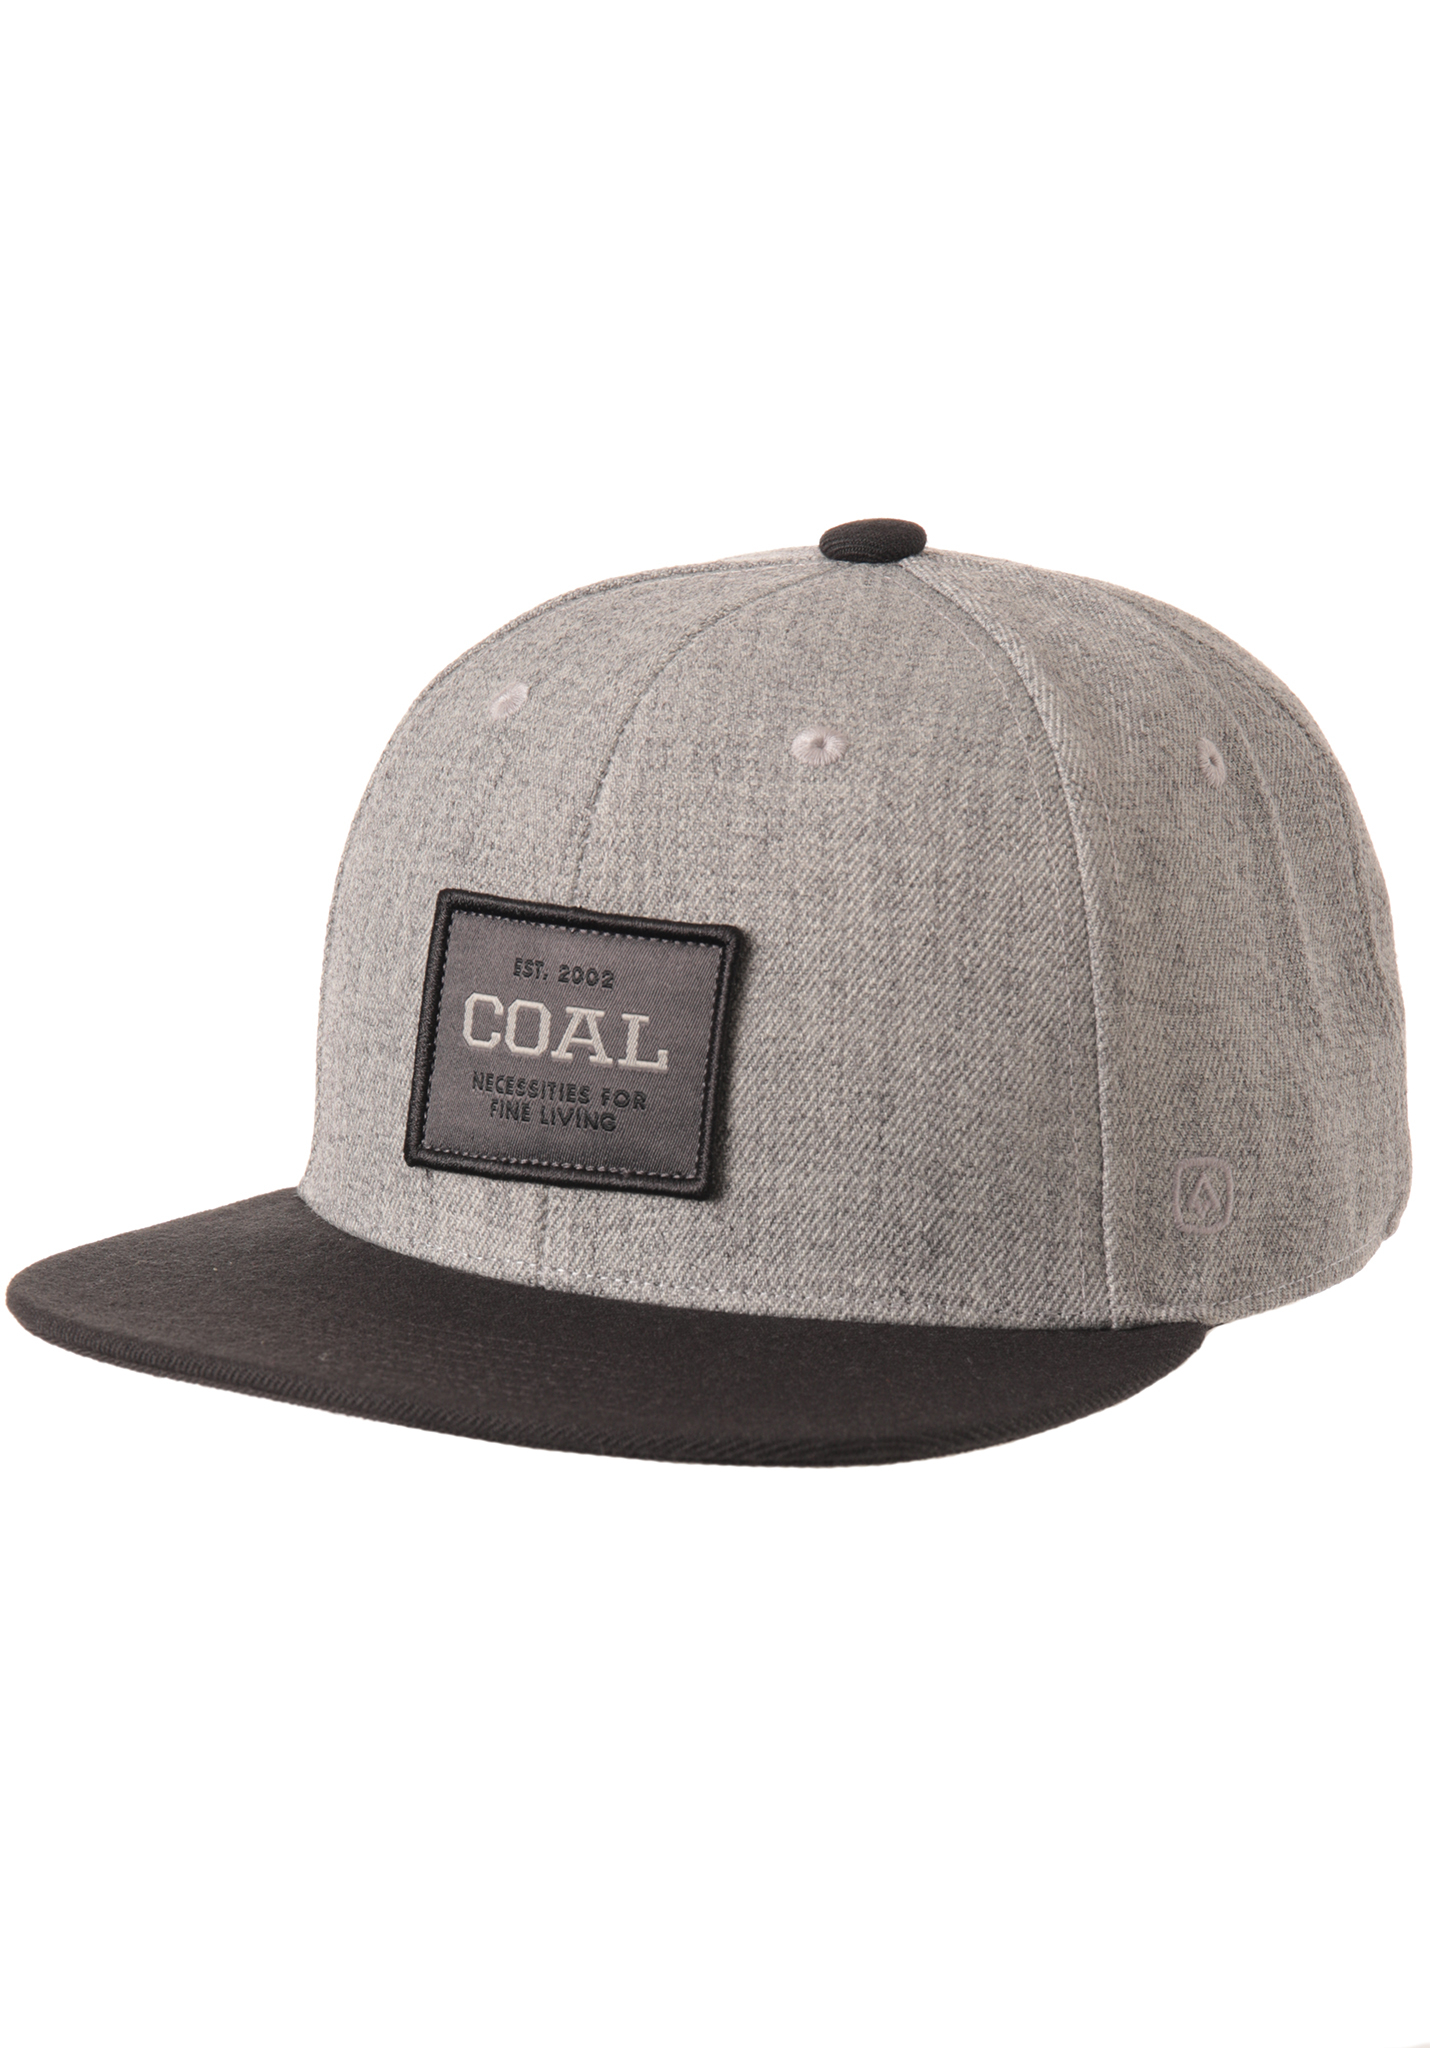 Coal The Core Snapback Cap sportliches grau One Size